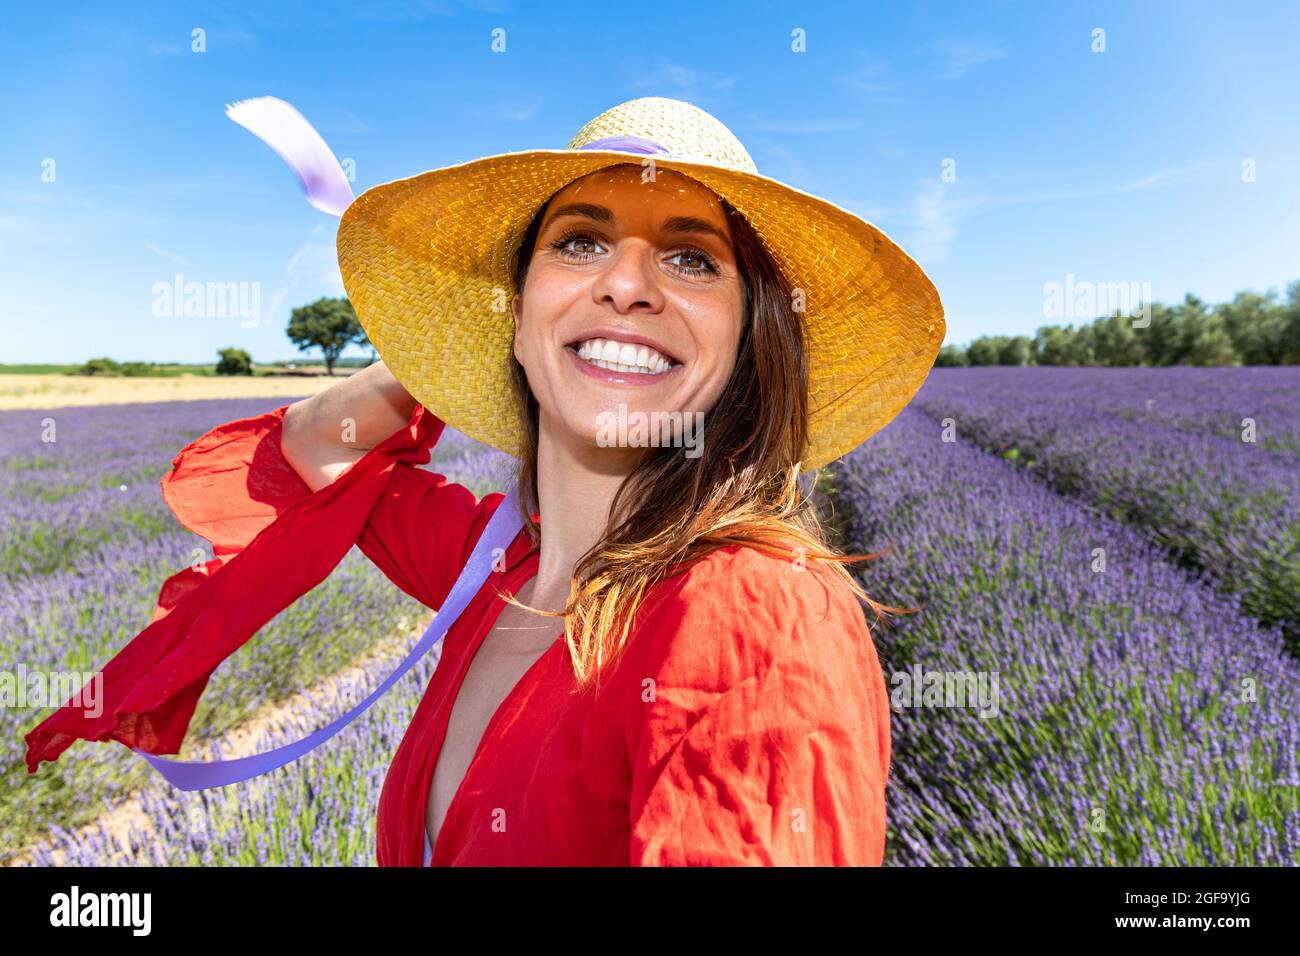 Junge lächelnde Frau mit einem Strohhut, die ein Selfie in einem blühenden Lavendelfeld nimmt. Konzept von Glück und Wohlbefinden. Stockfoto